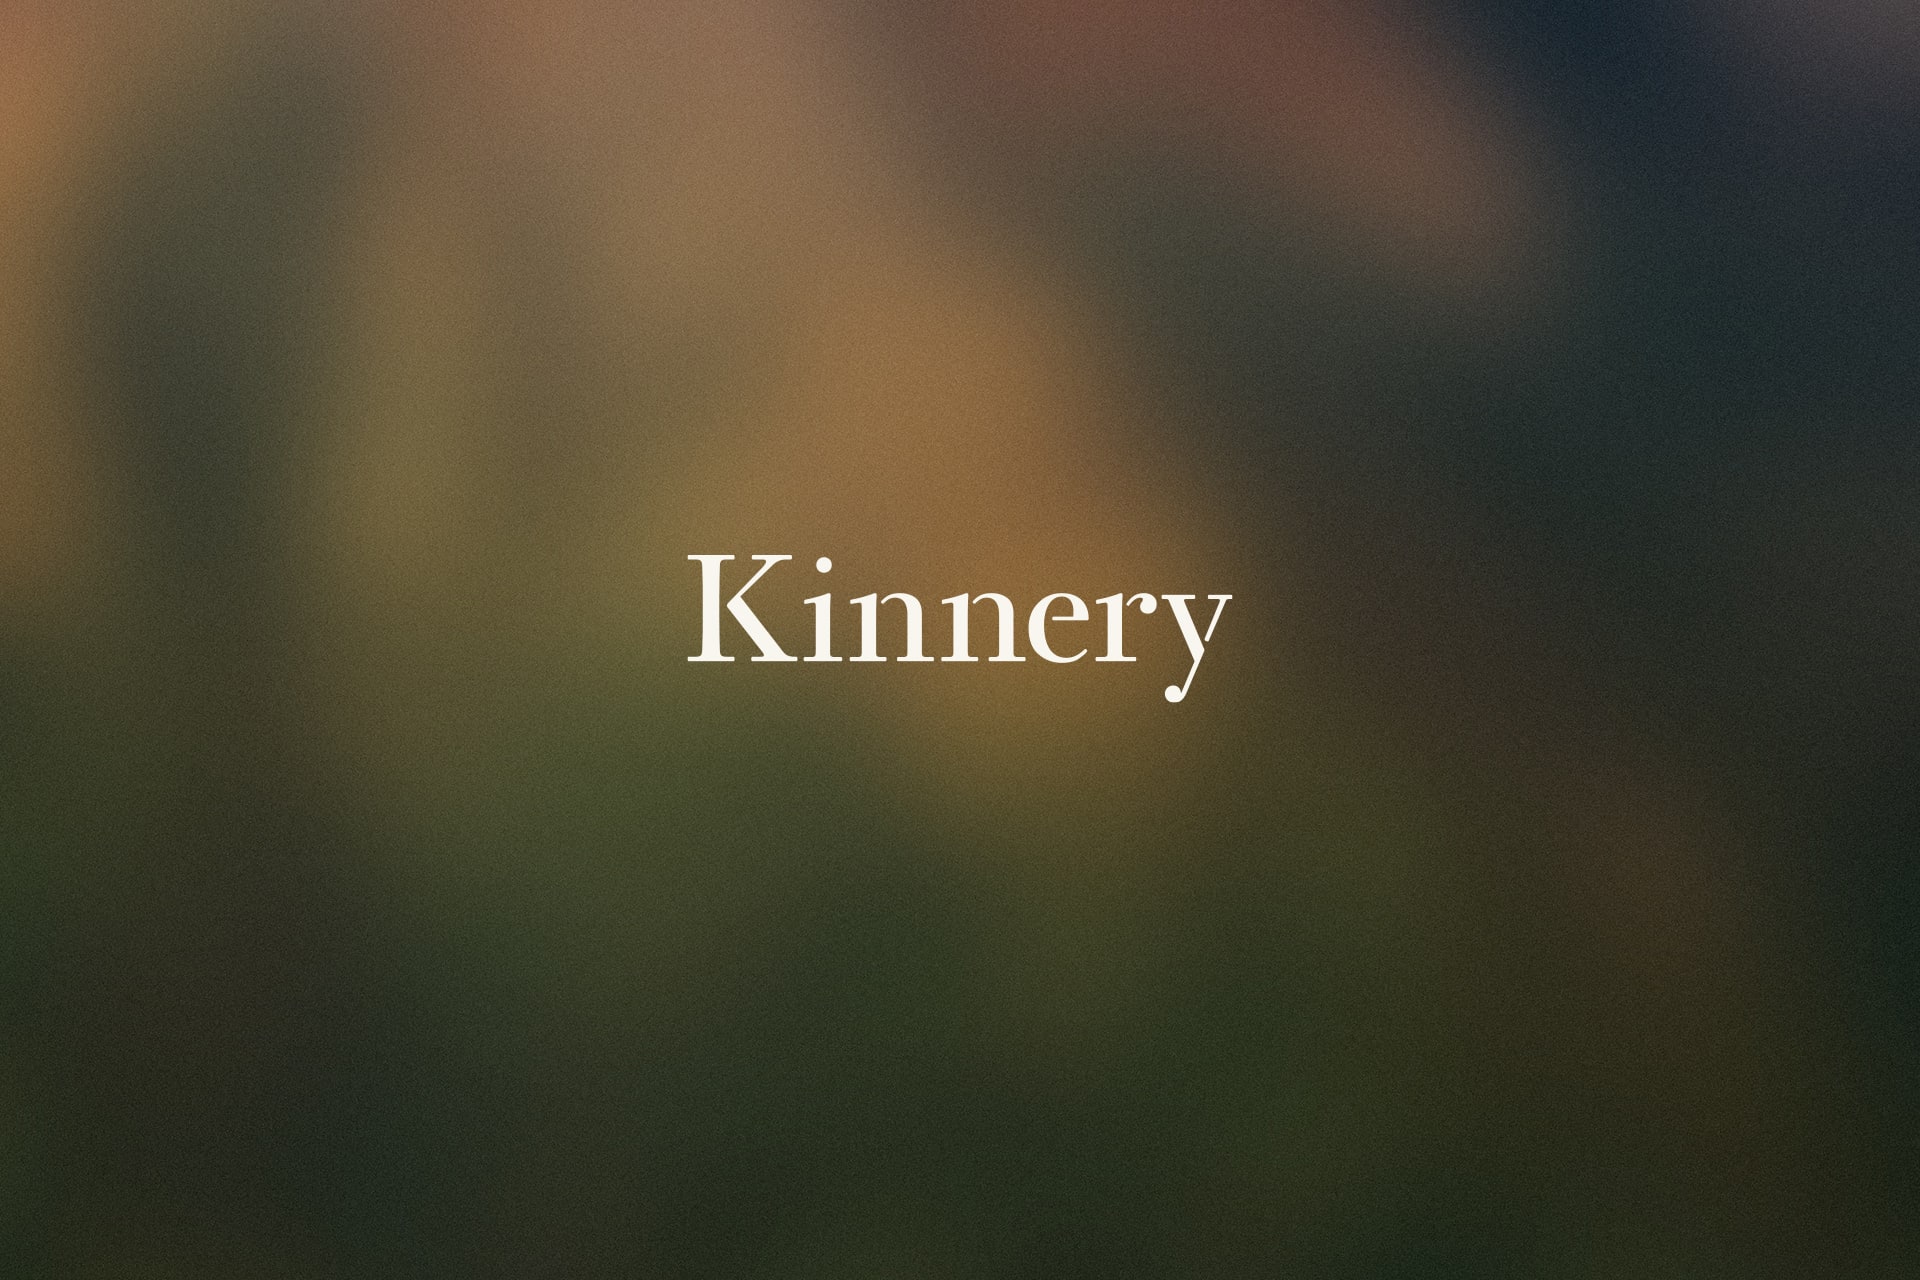 Kinnery Logo Design